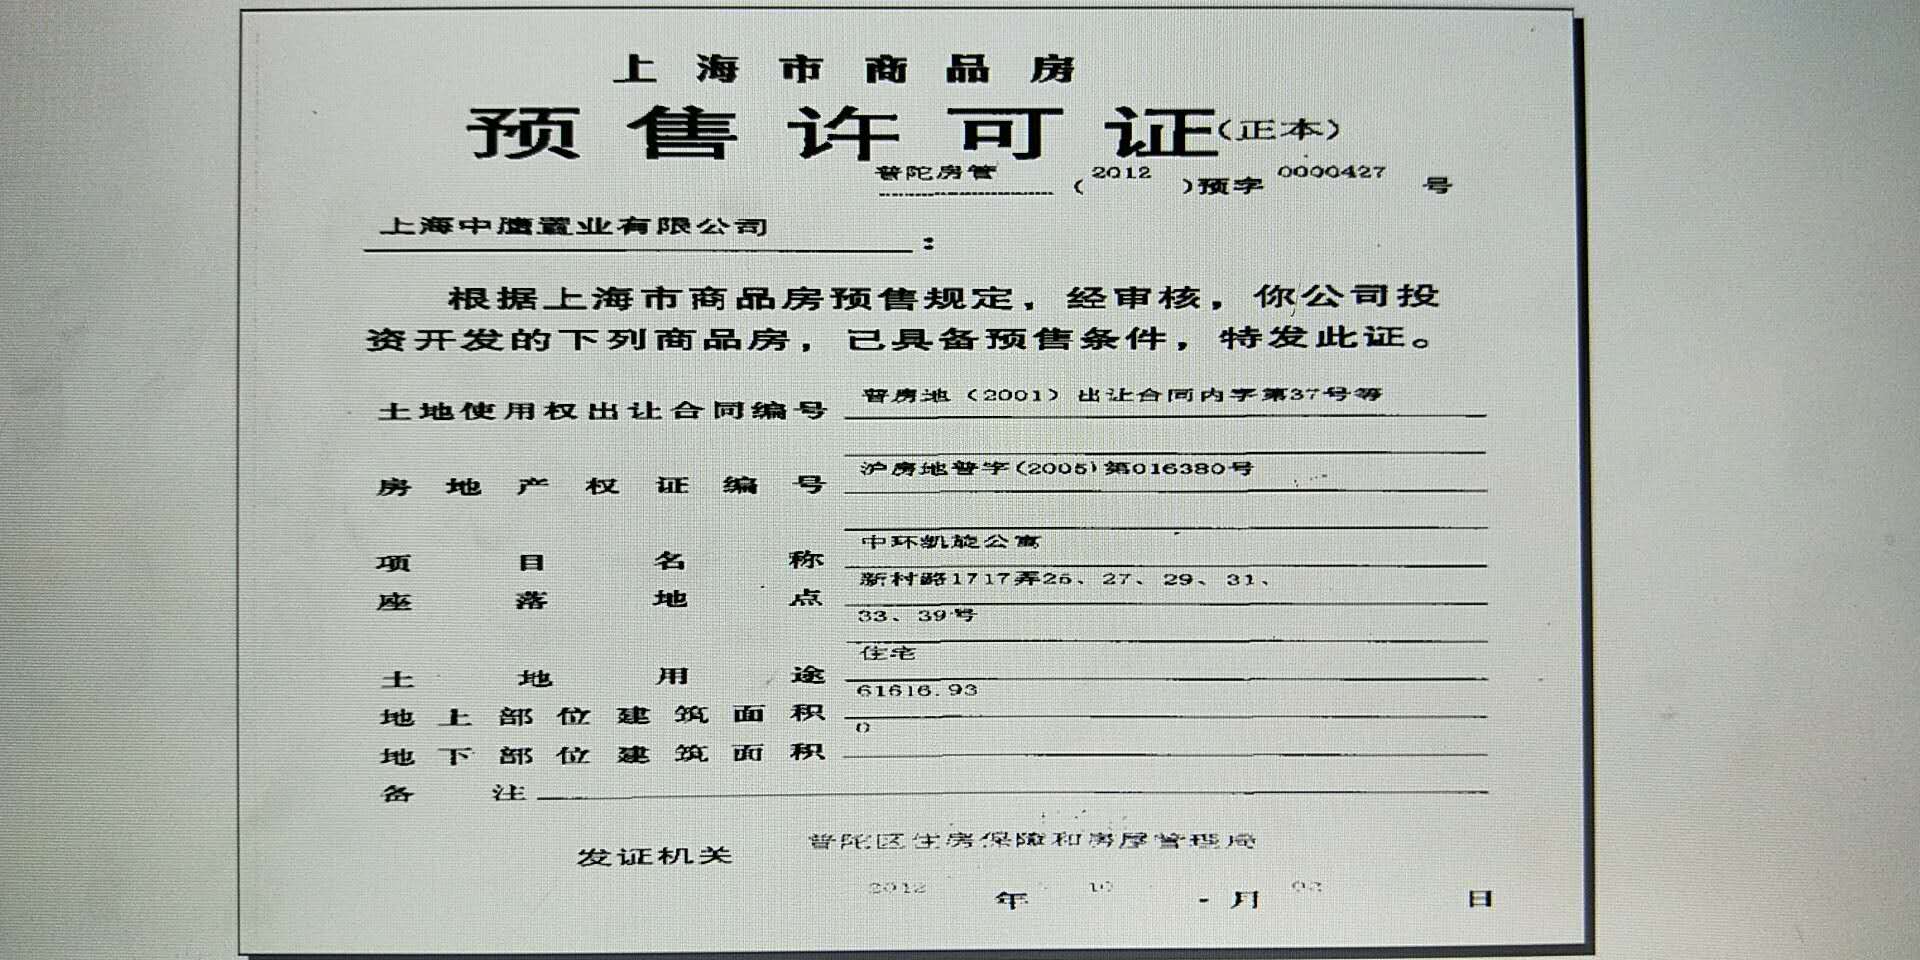 【上海市中鹰黑森林楼盘】房价,户型,开盘时间详情 预售许可证